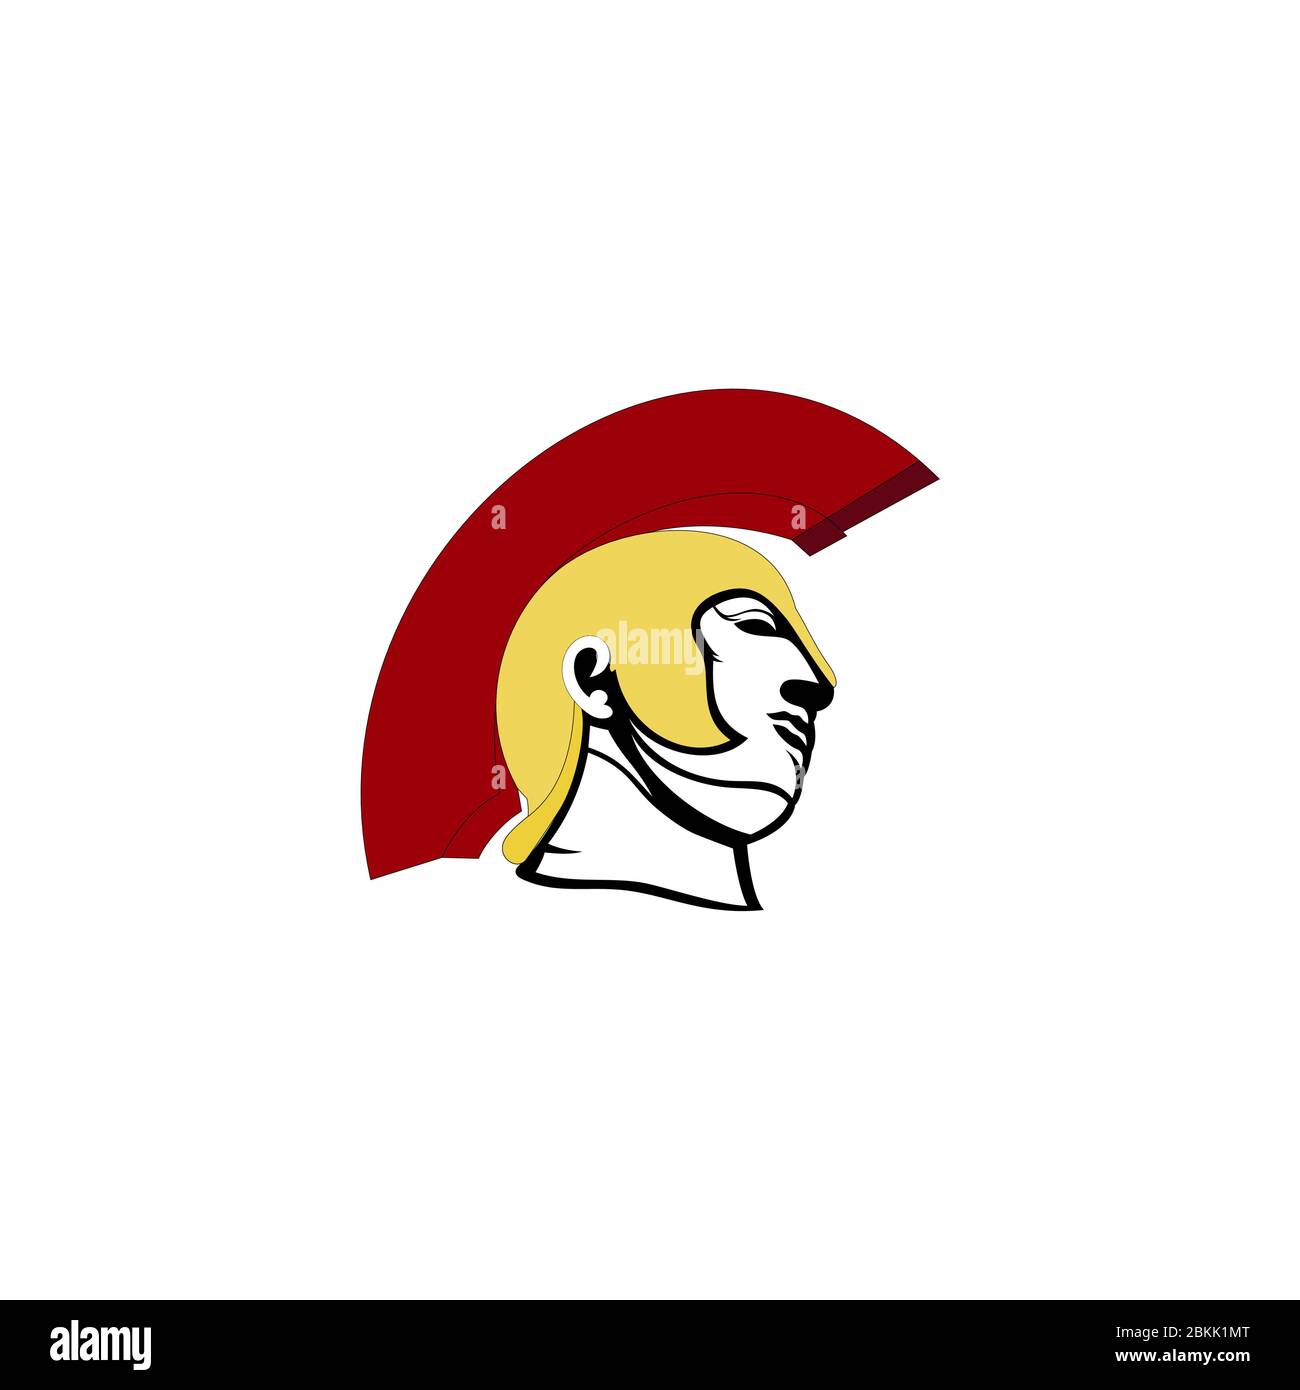 Sparta head and helmet logo design vector illustration Stock Vector